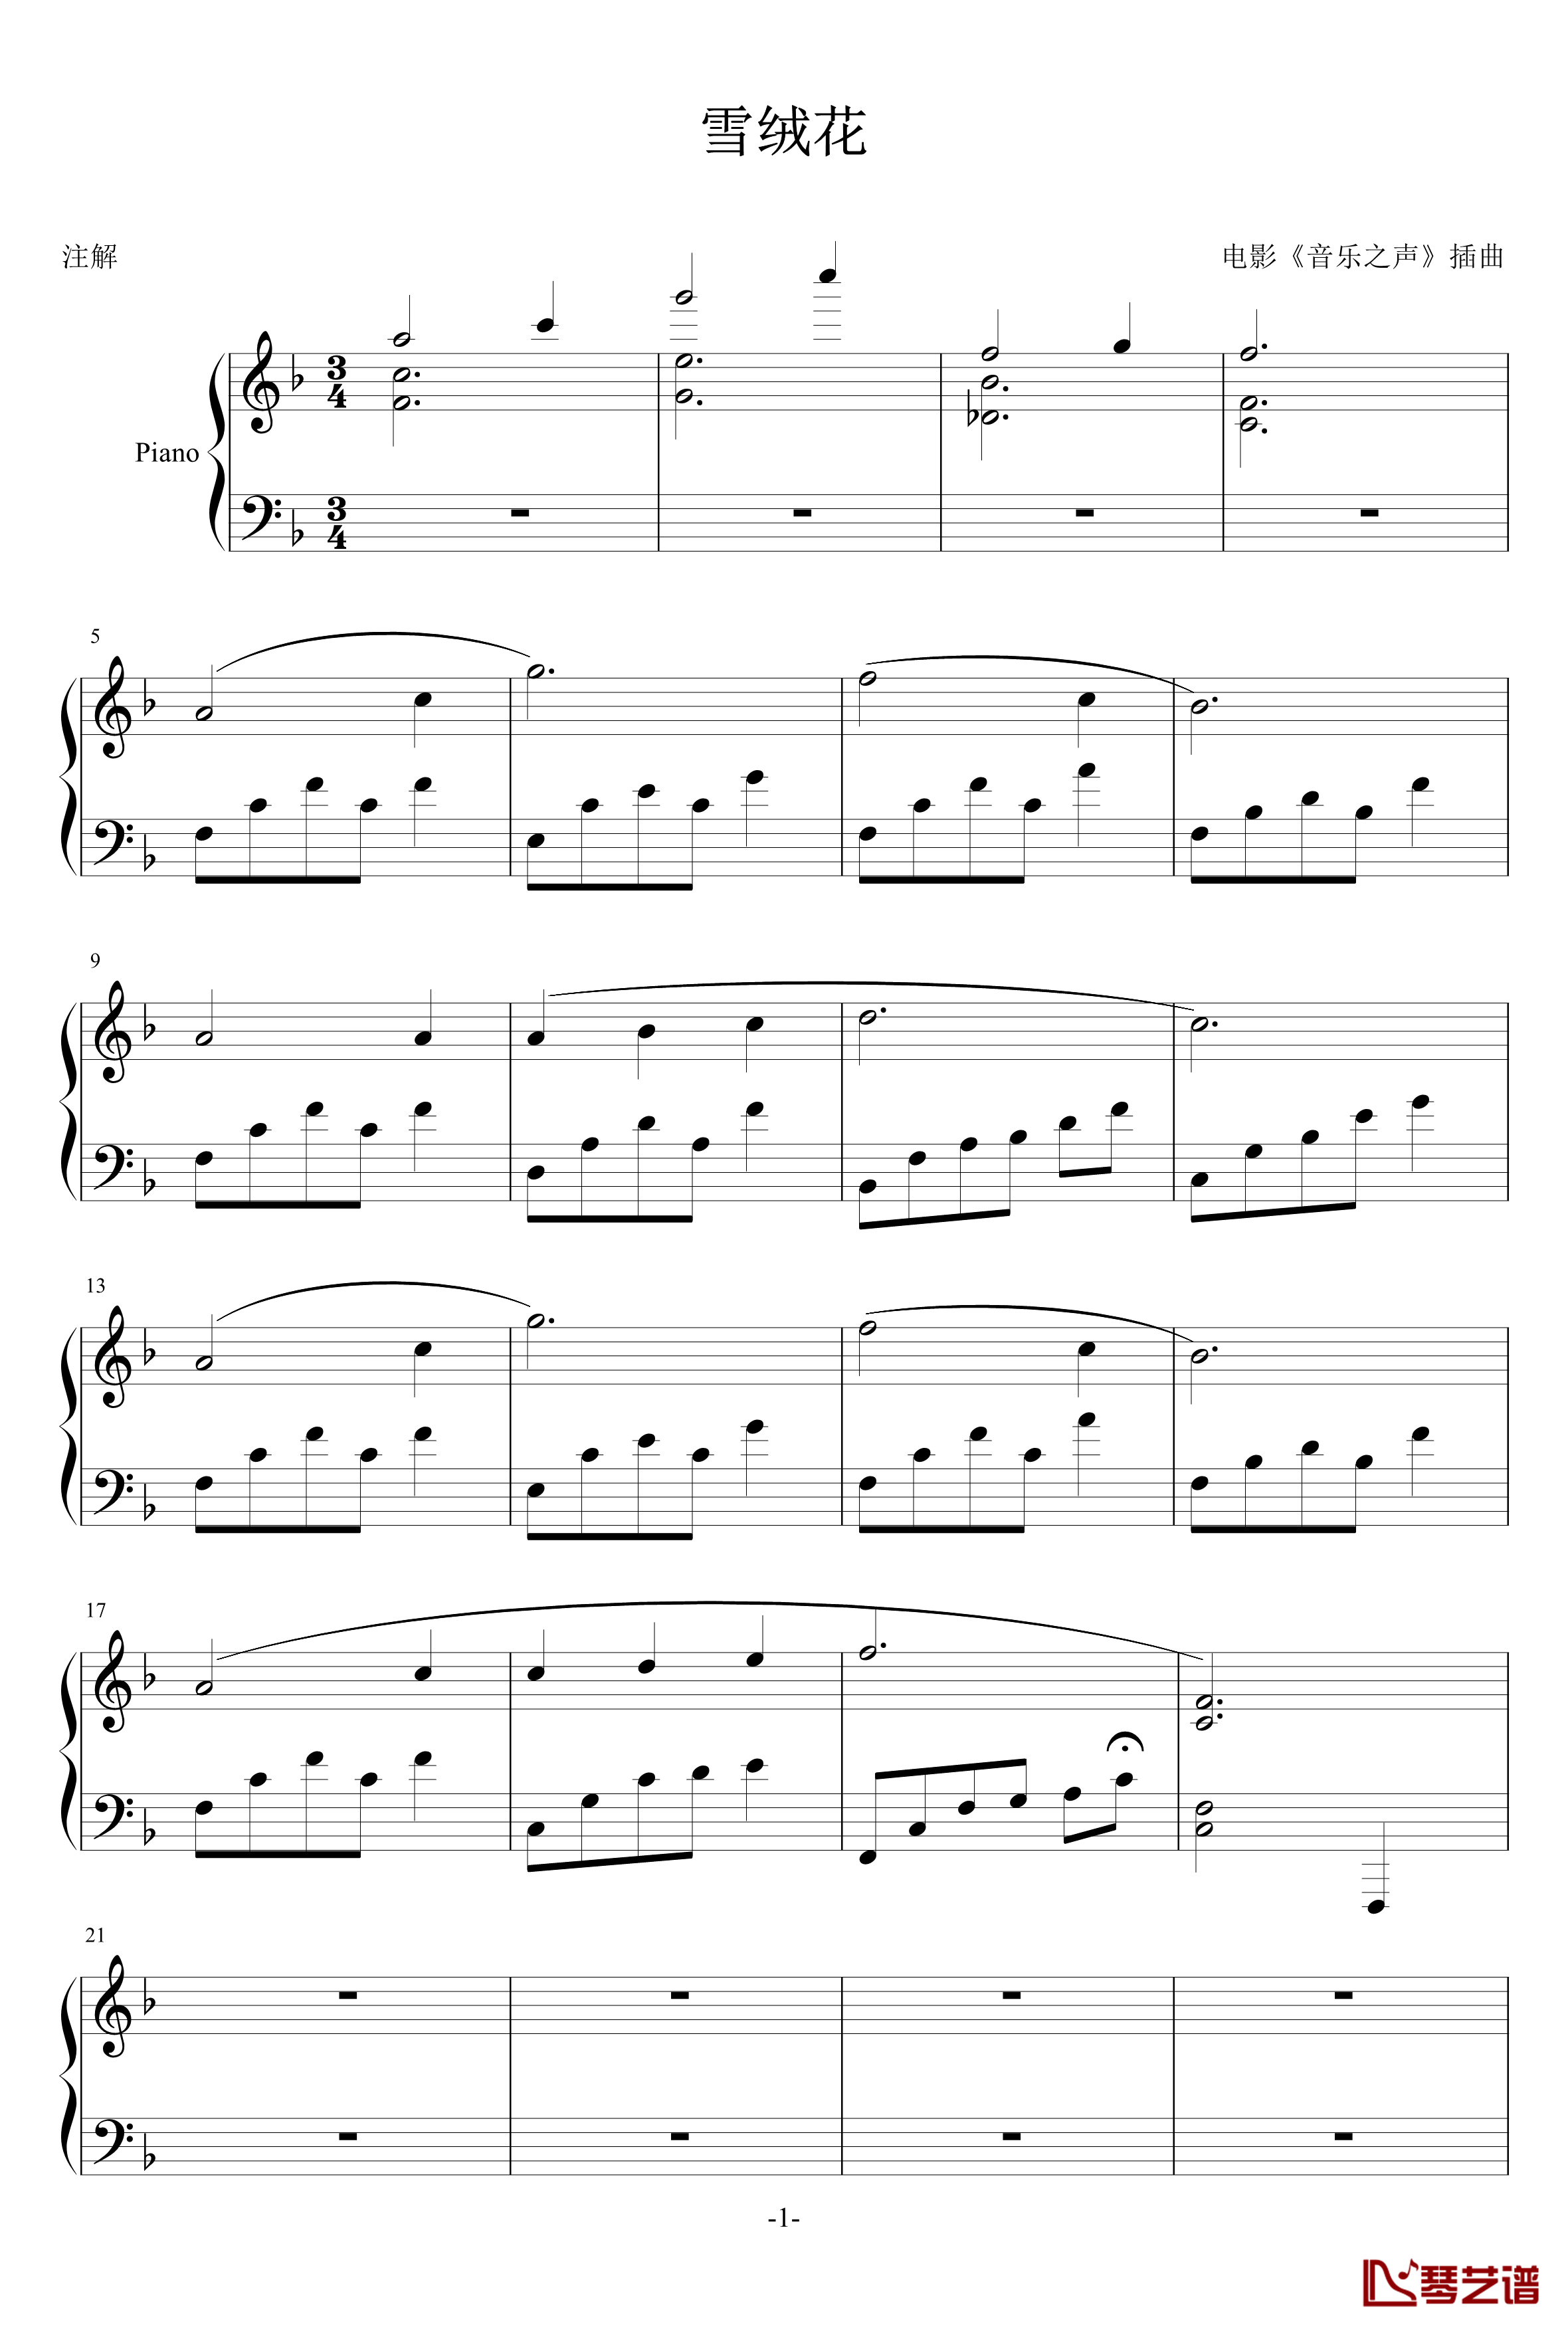 雪绒花钢琴谱-日青-世界名曲1